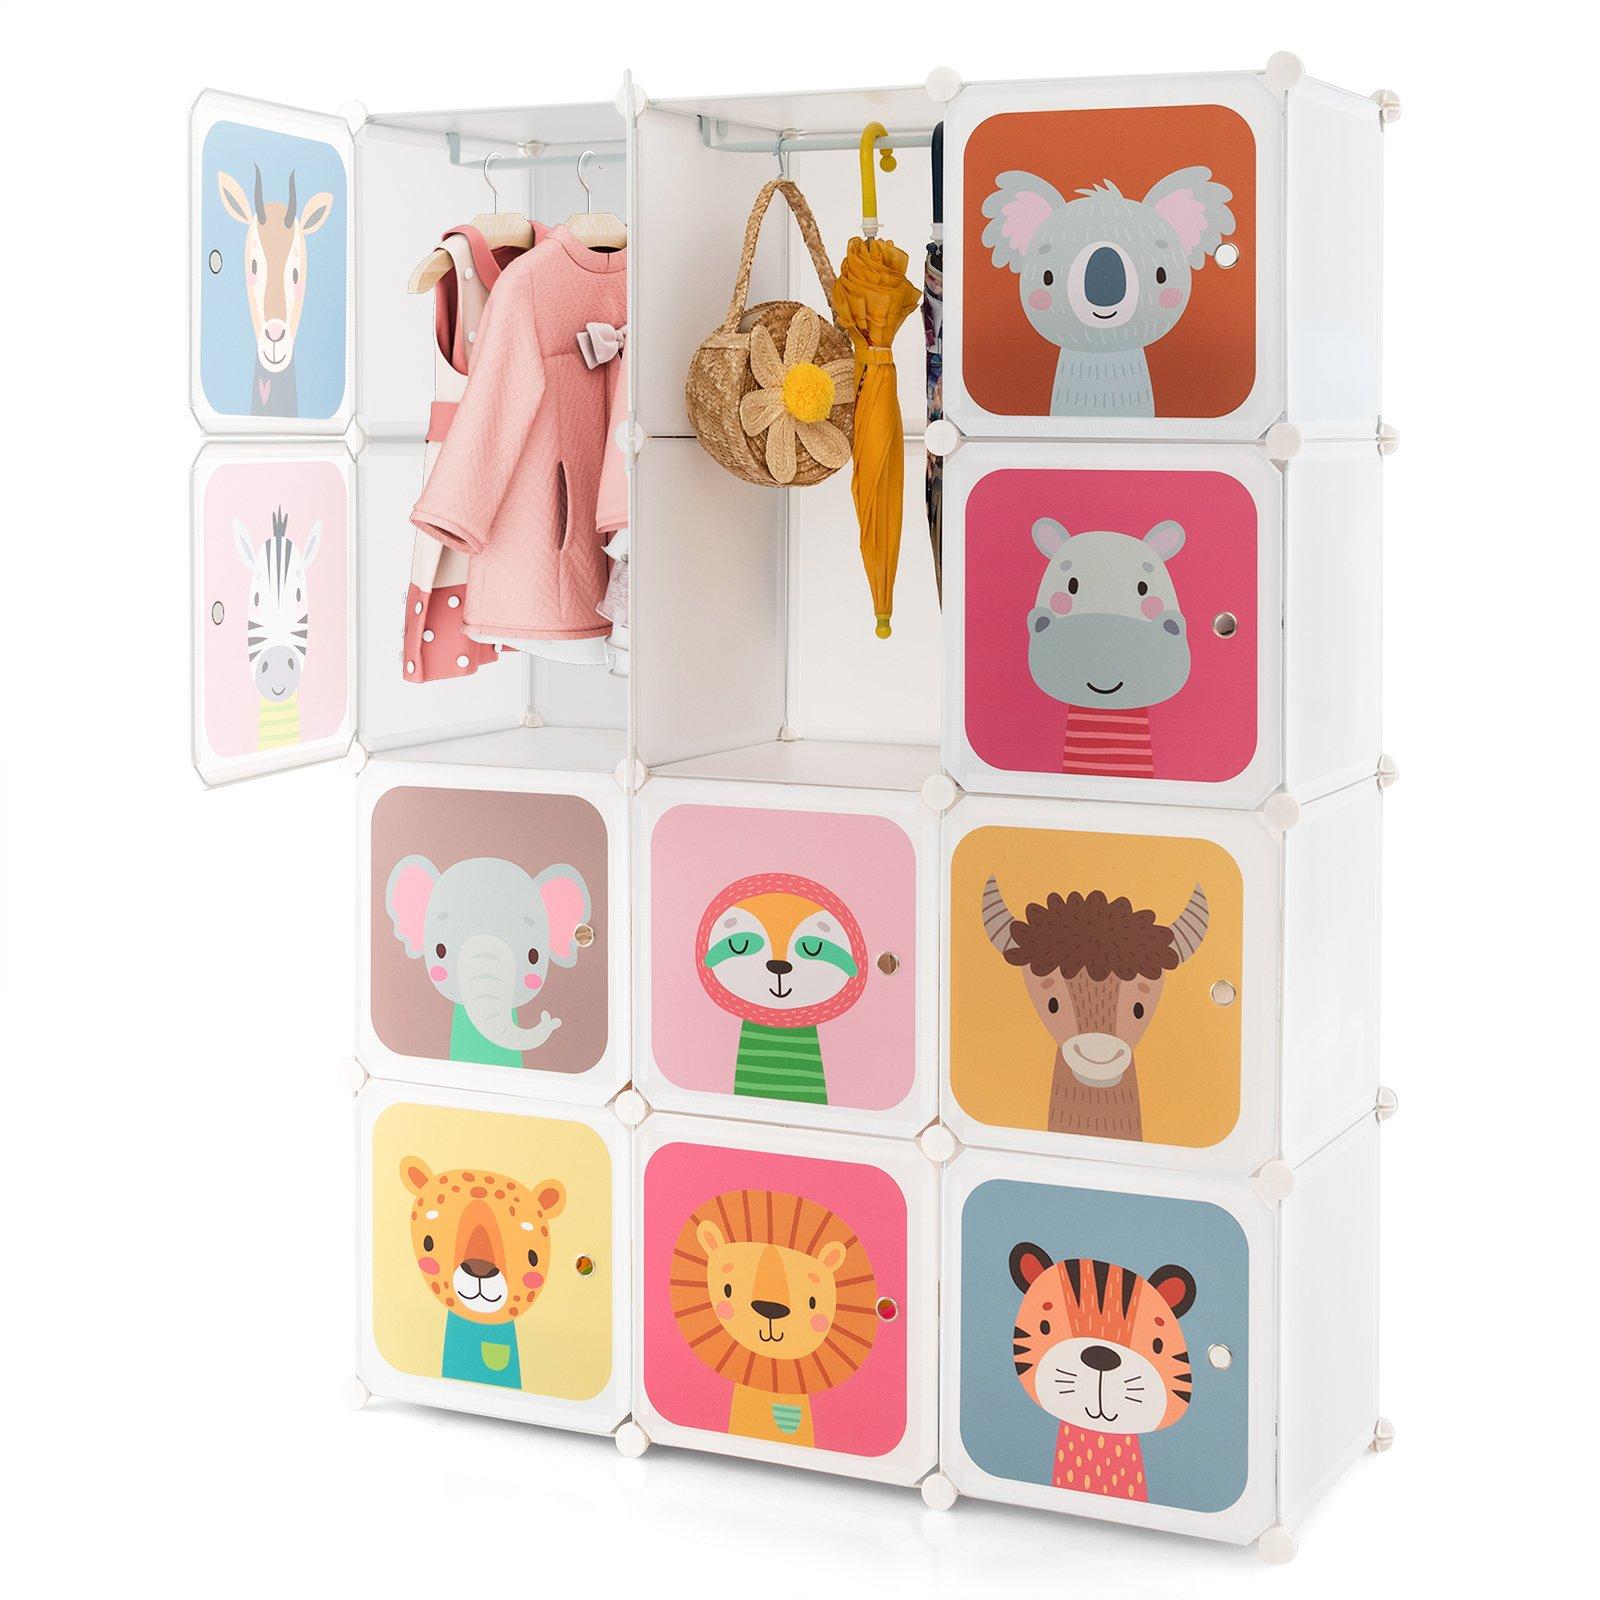 Portable Kids Wardrobe 12-Cube Baby Closet Dresser Children's Storage Organizer